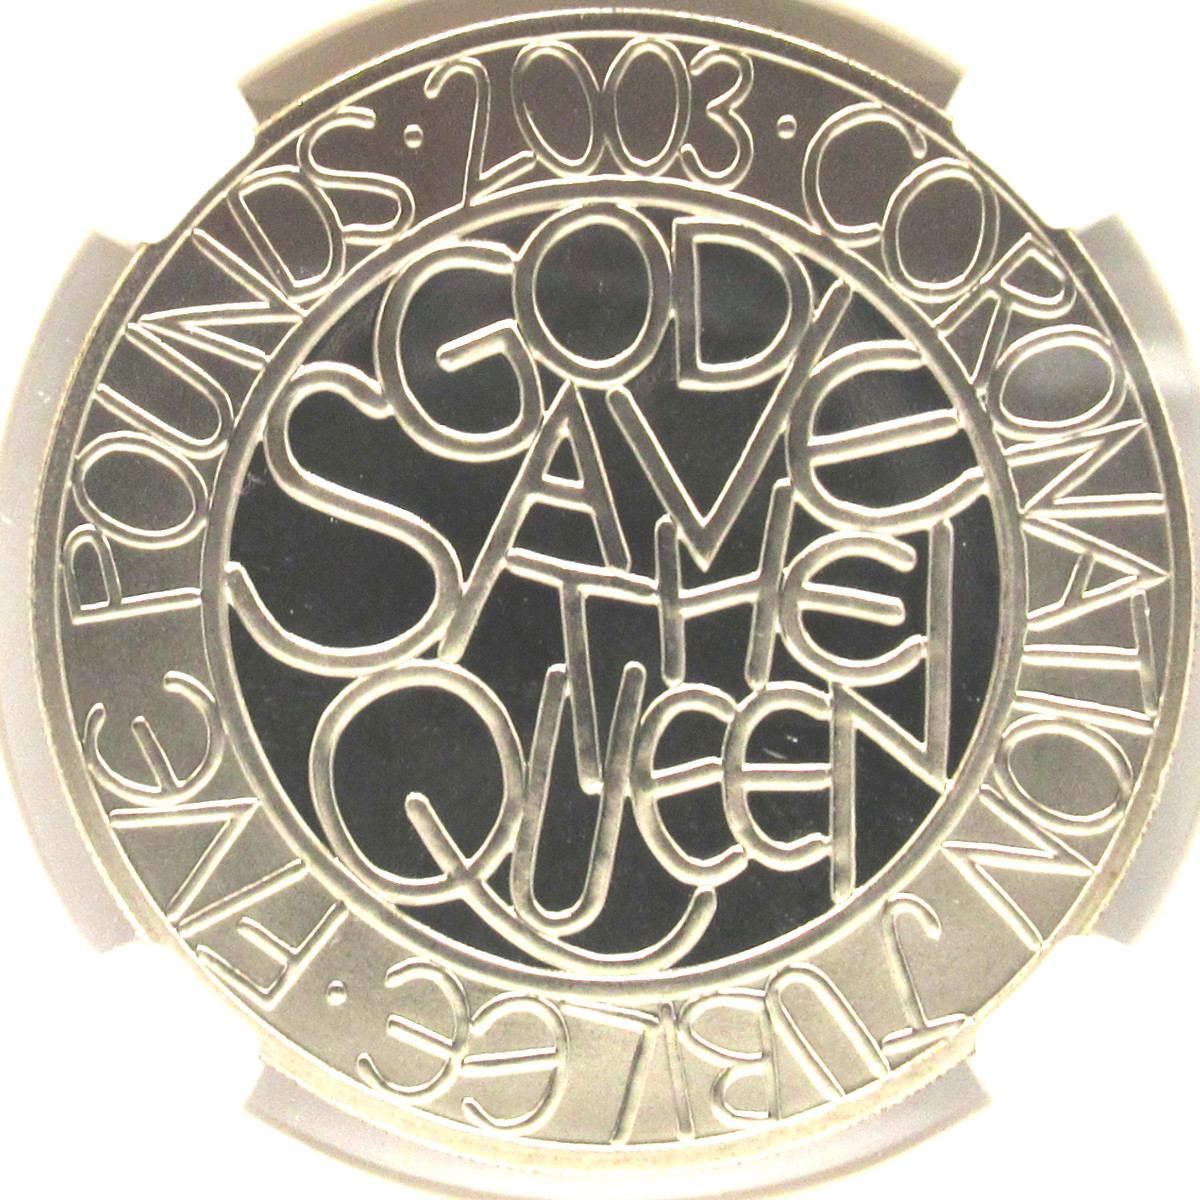 【人気急上昇】 『高鑑定』2003年 イギリス 5ポンド NGC PF69 ULTRA CAMEO 2003年 エリザベス女王即位50周年記念 硬貨 ヨーロッパ